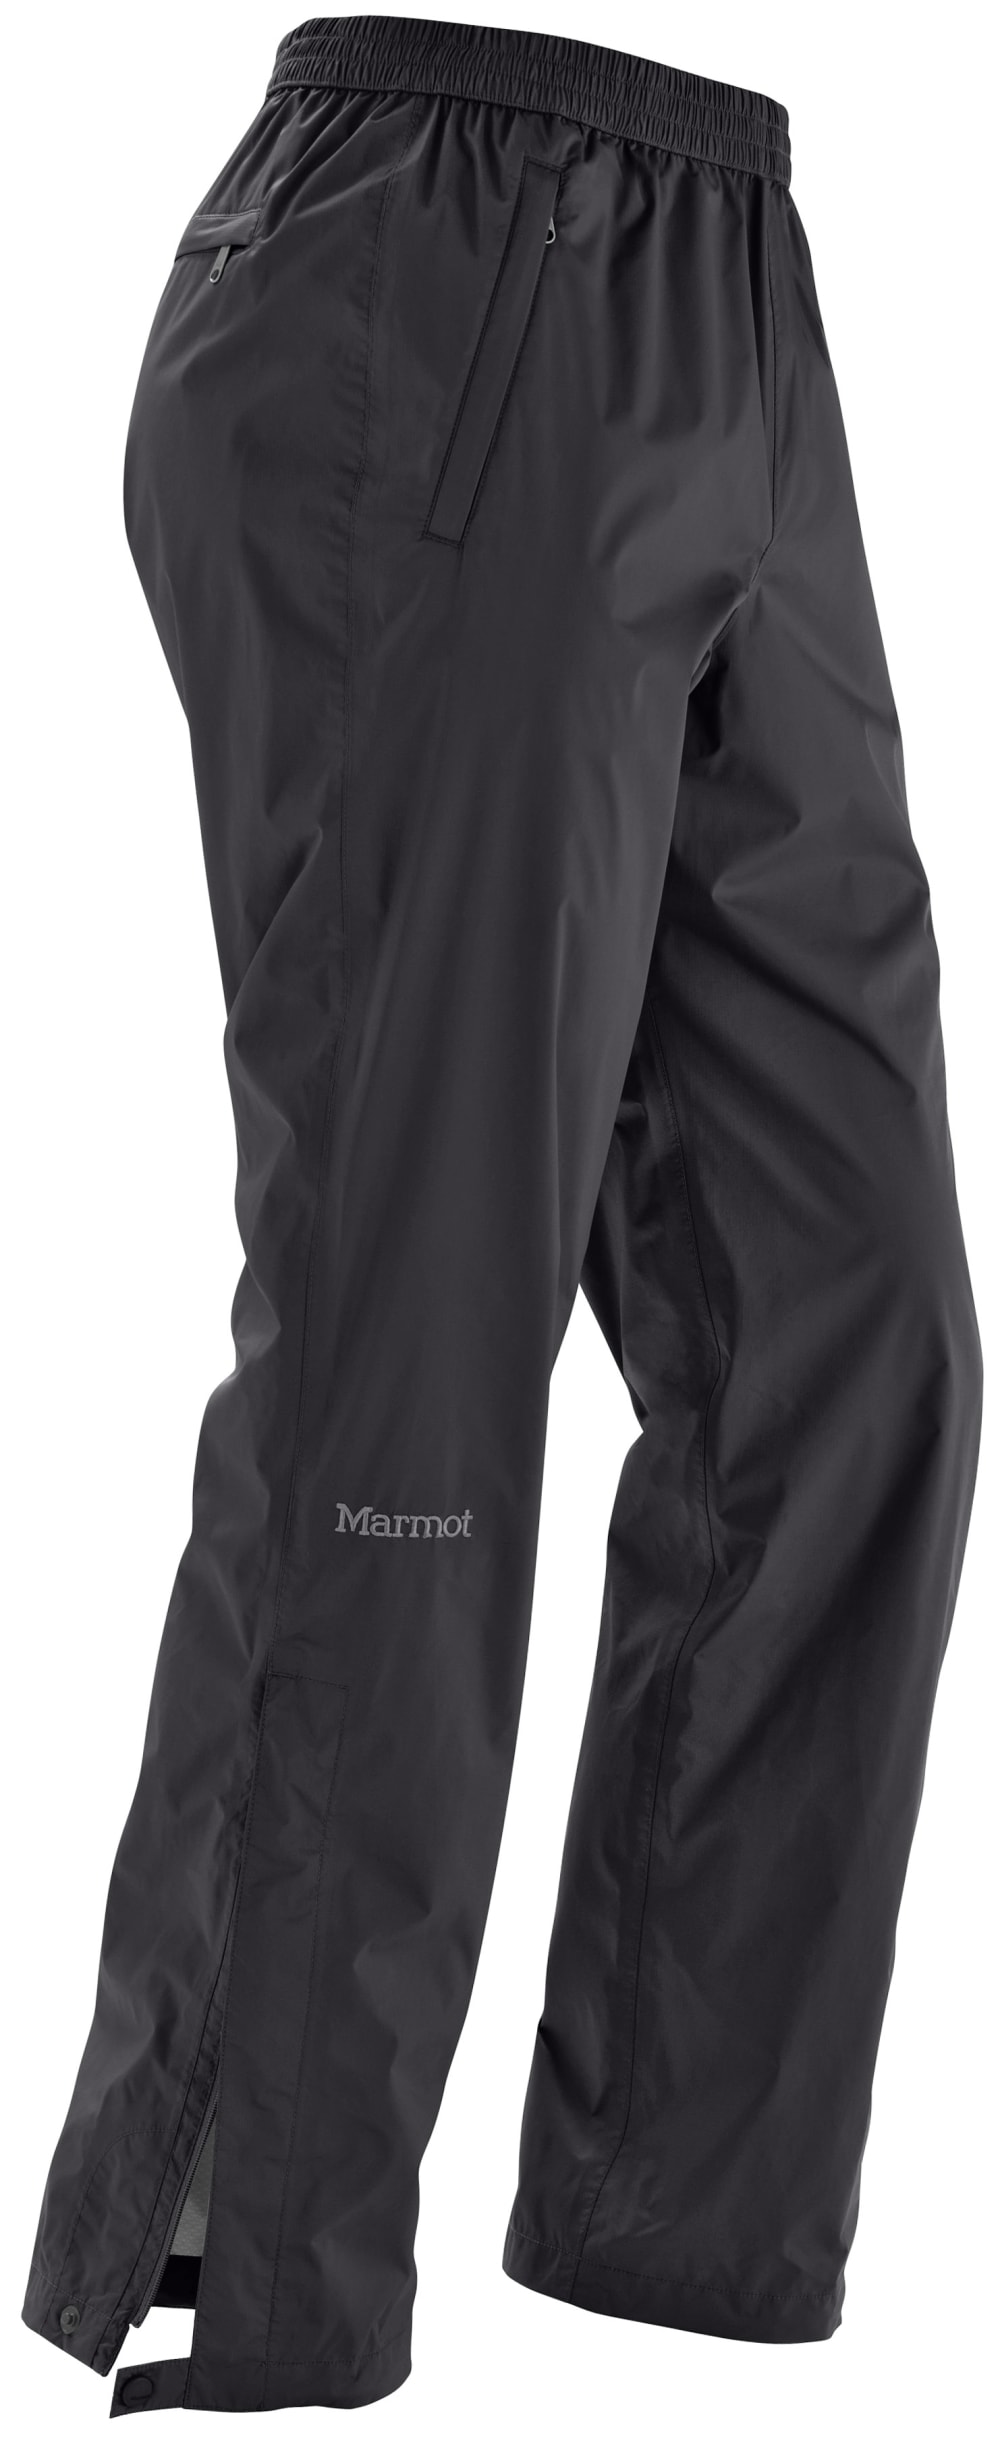 Marmot Men's Precip Pants - Black, L